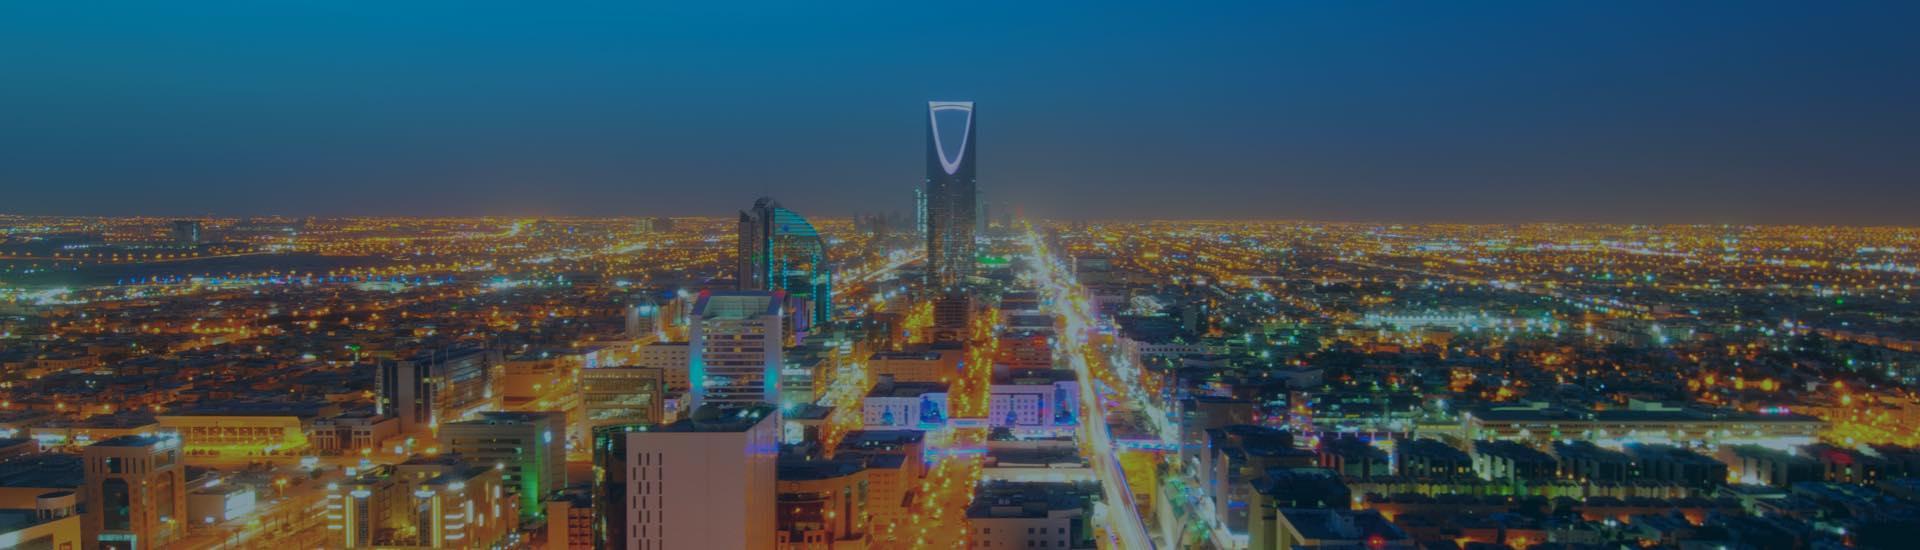 Find the Best Hotels in Riyadh